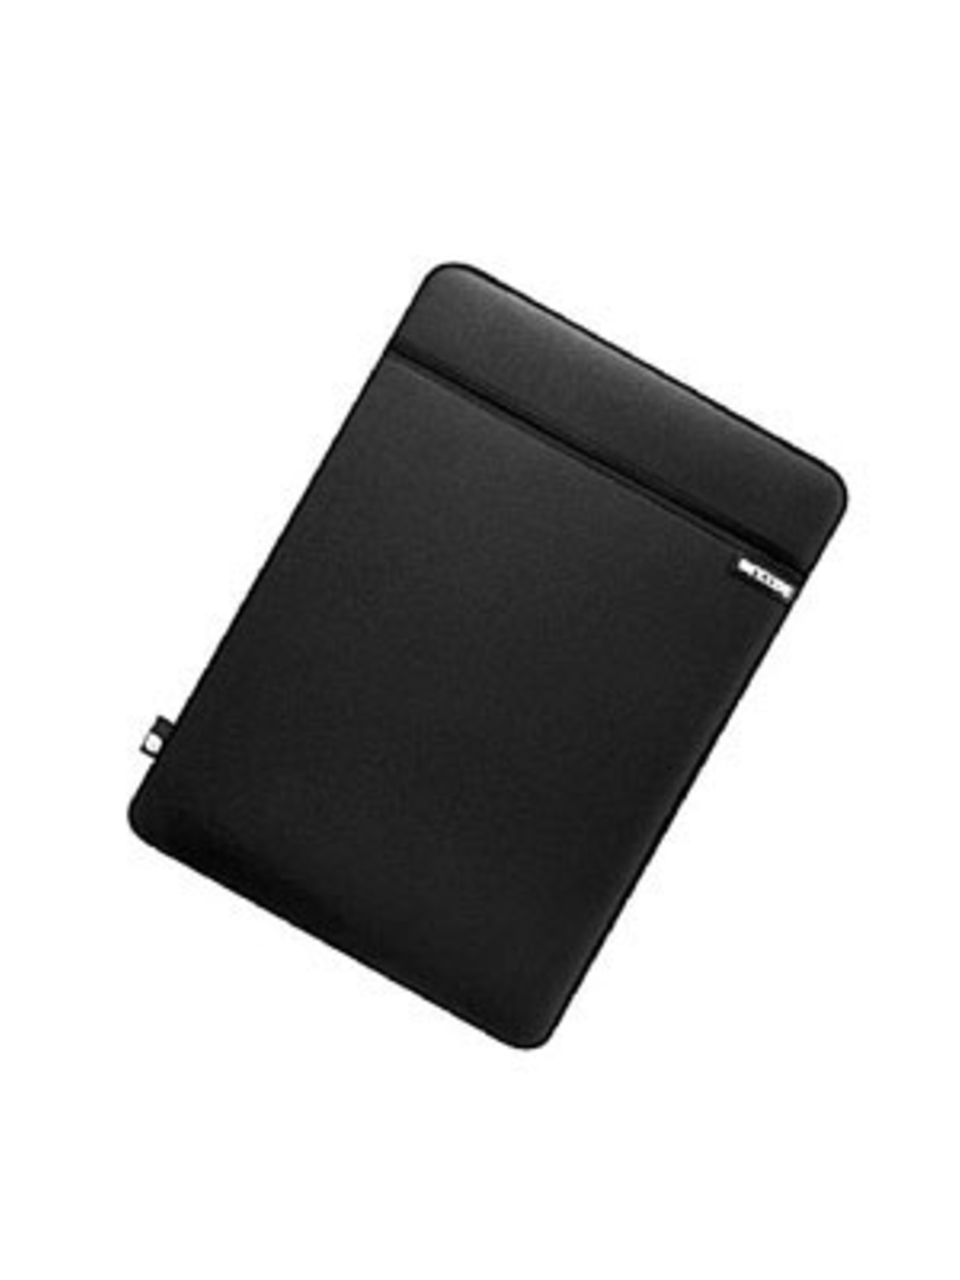 Schwarzes Laptopcase für das Airbook von Mac. Von Inase, um 35 Euro. Über Frontlineshop.